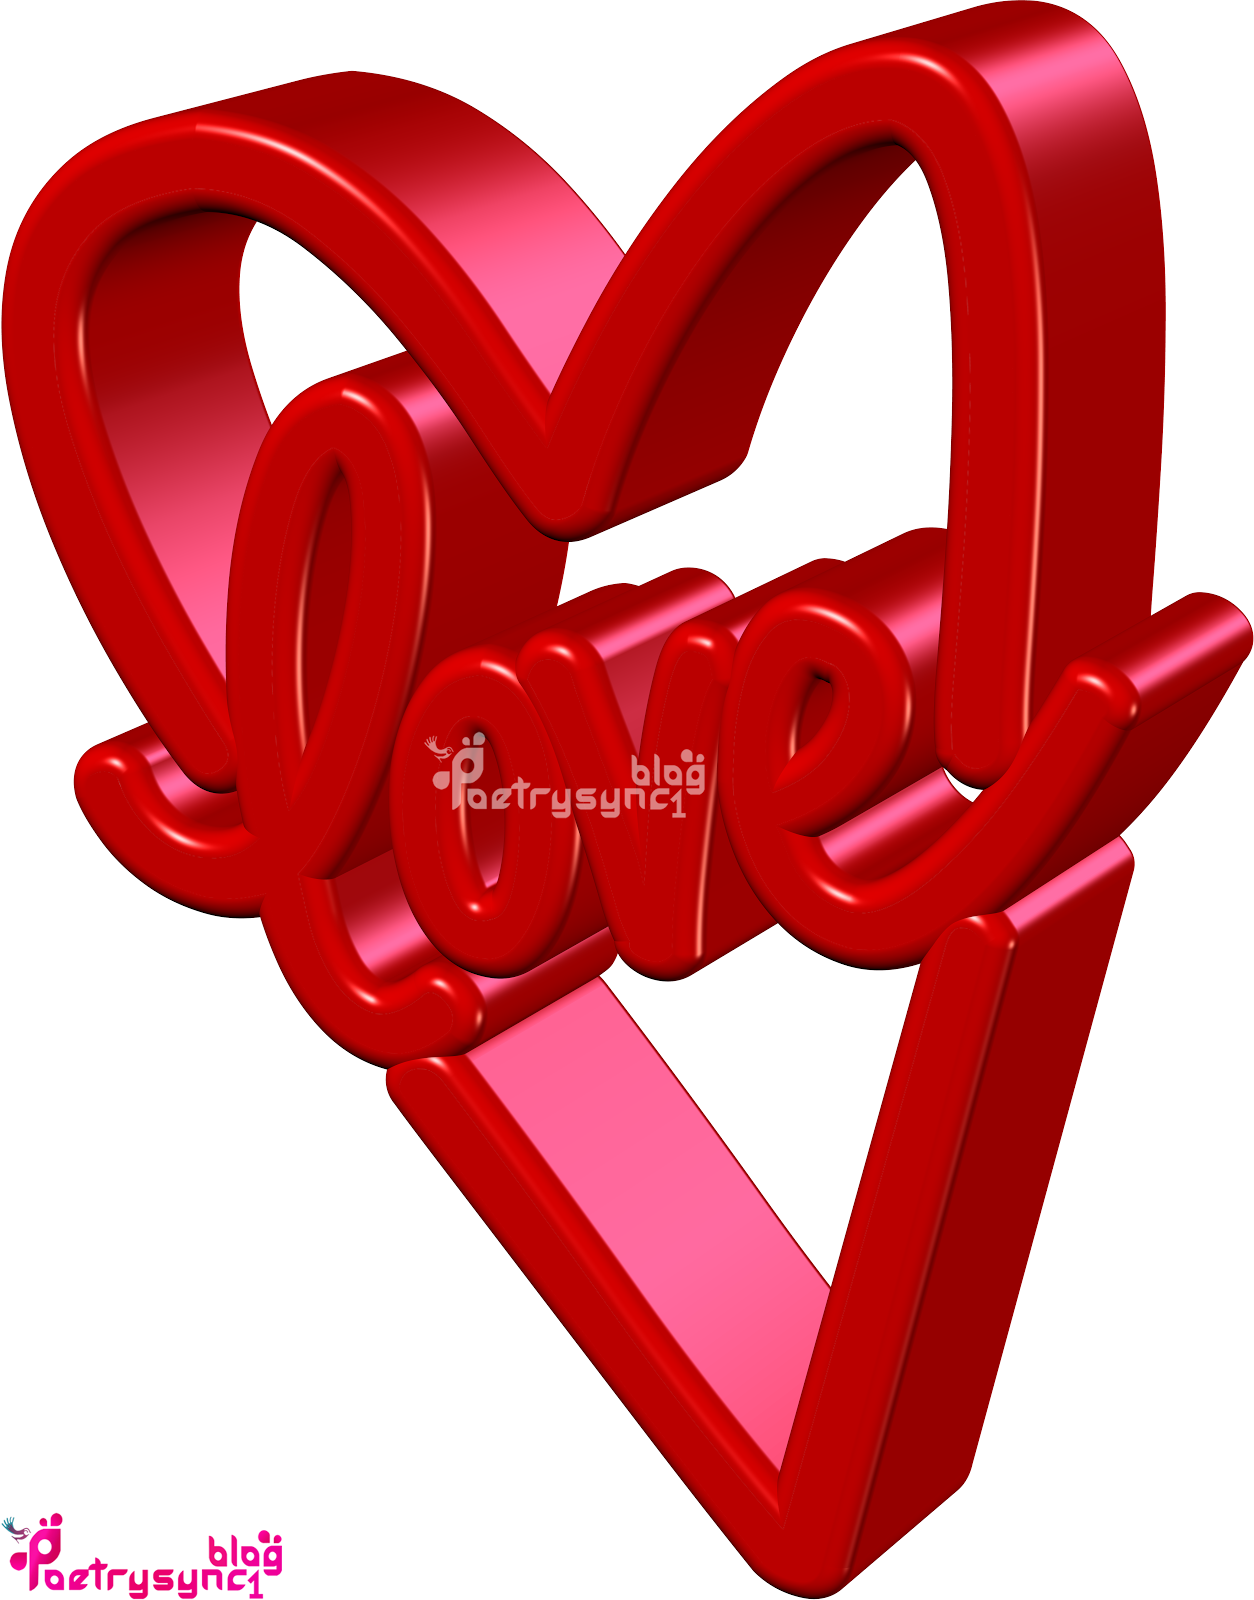 amo gli sfondi con i messaggi,rosso,amore,cuore,rosa,san valentino